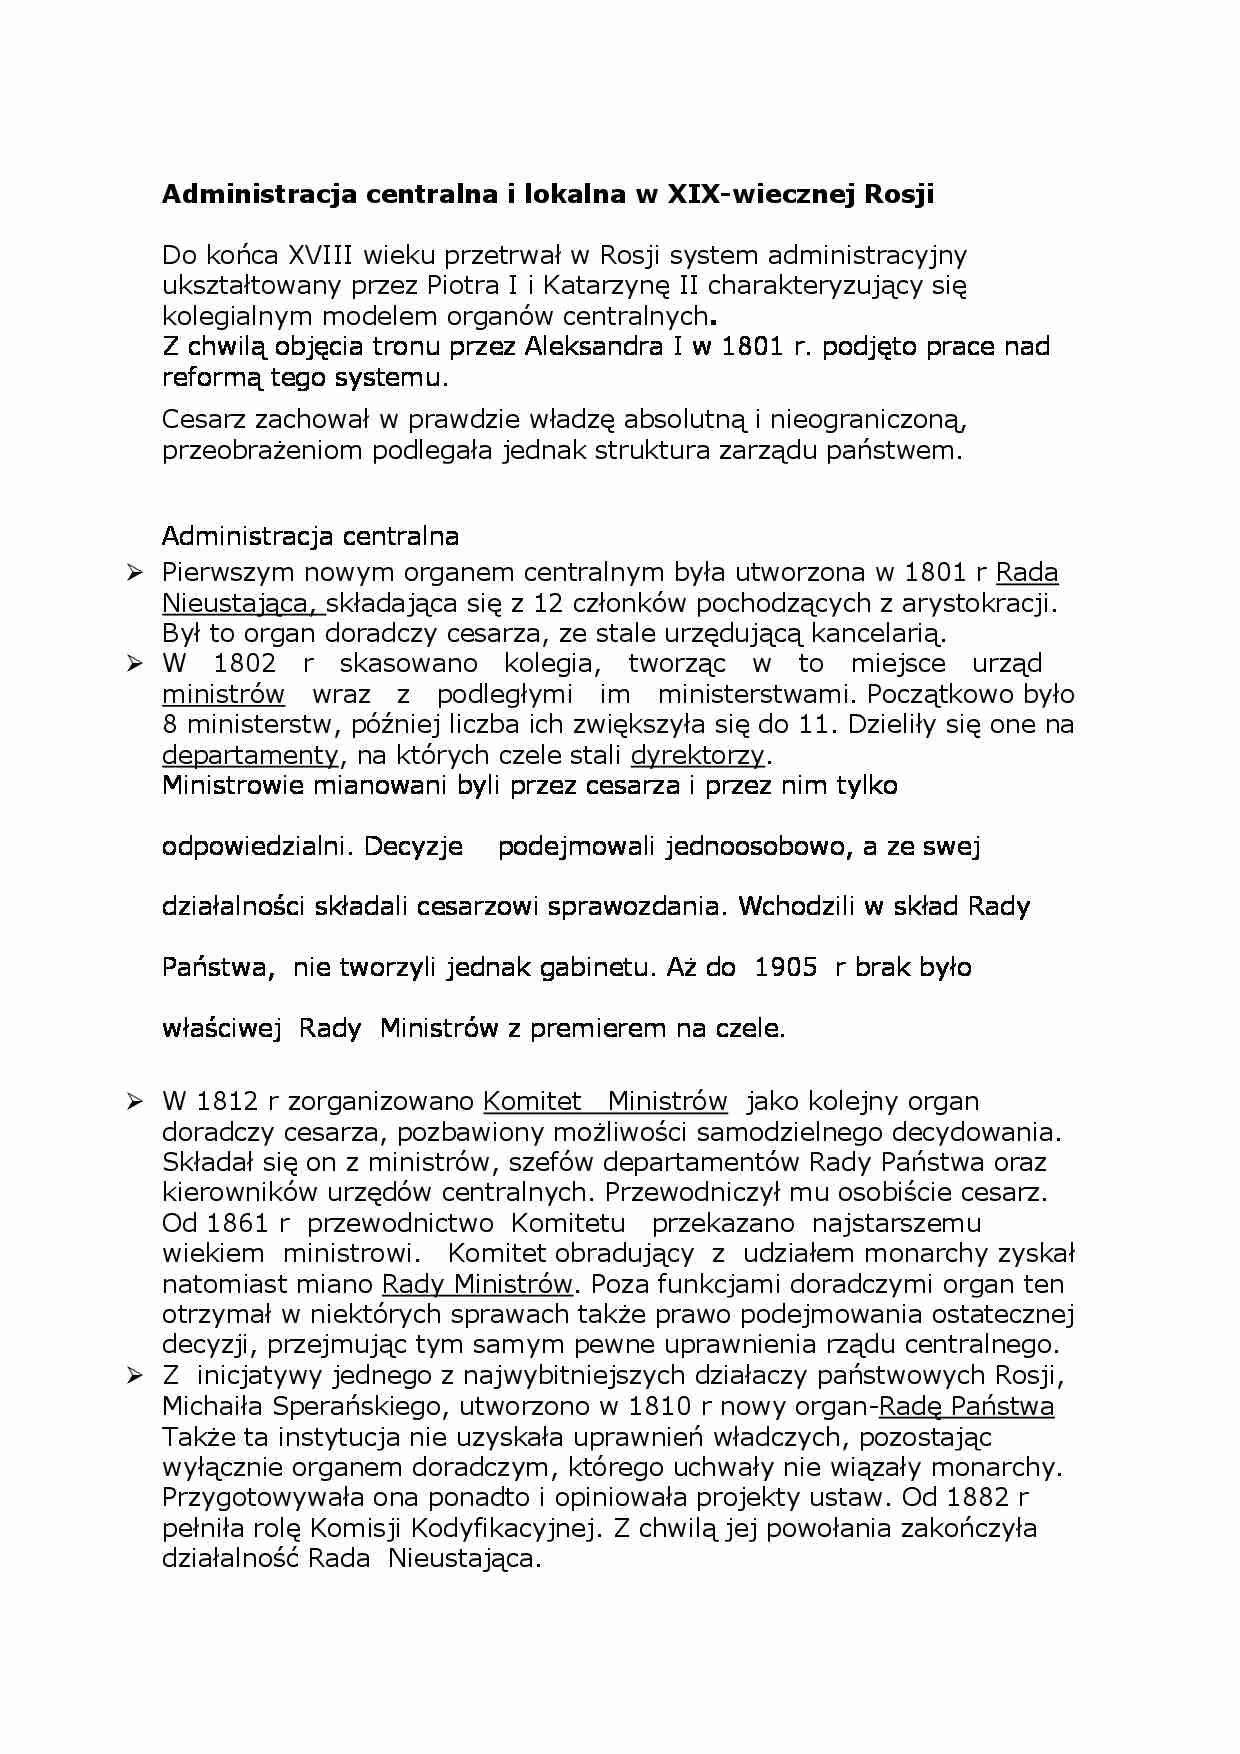 Administracja centralna i lokalna w XIX-wiecznej Rosji - strona 1